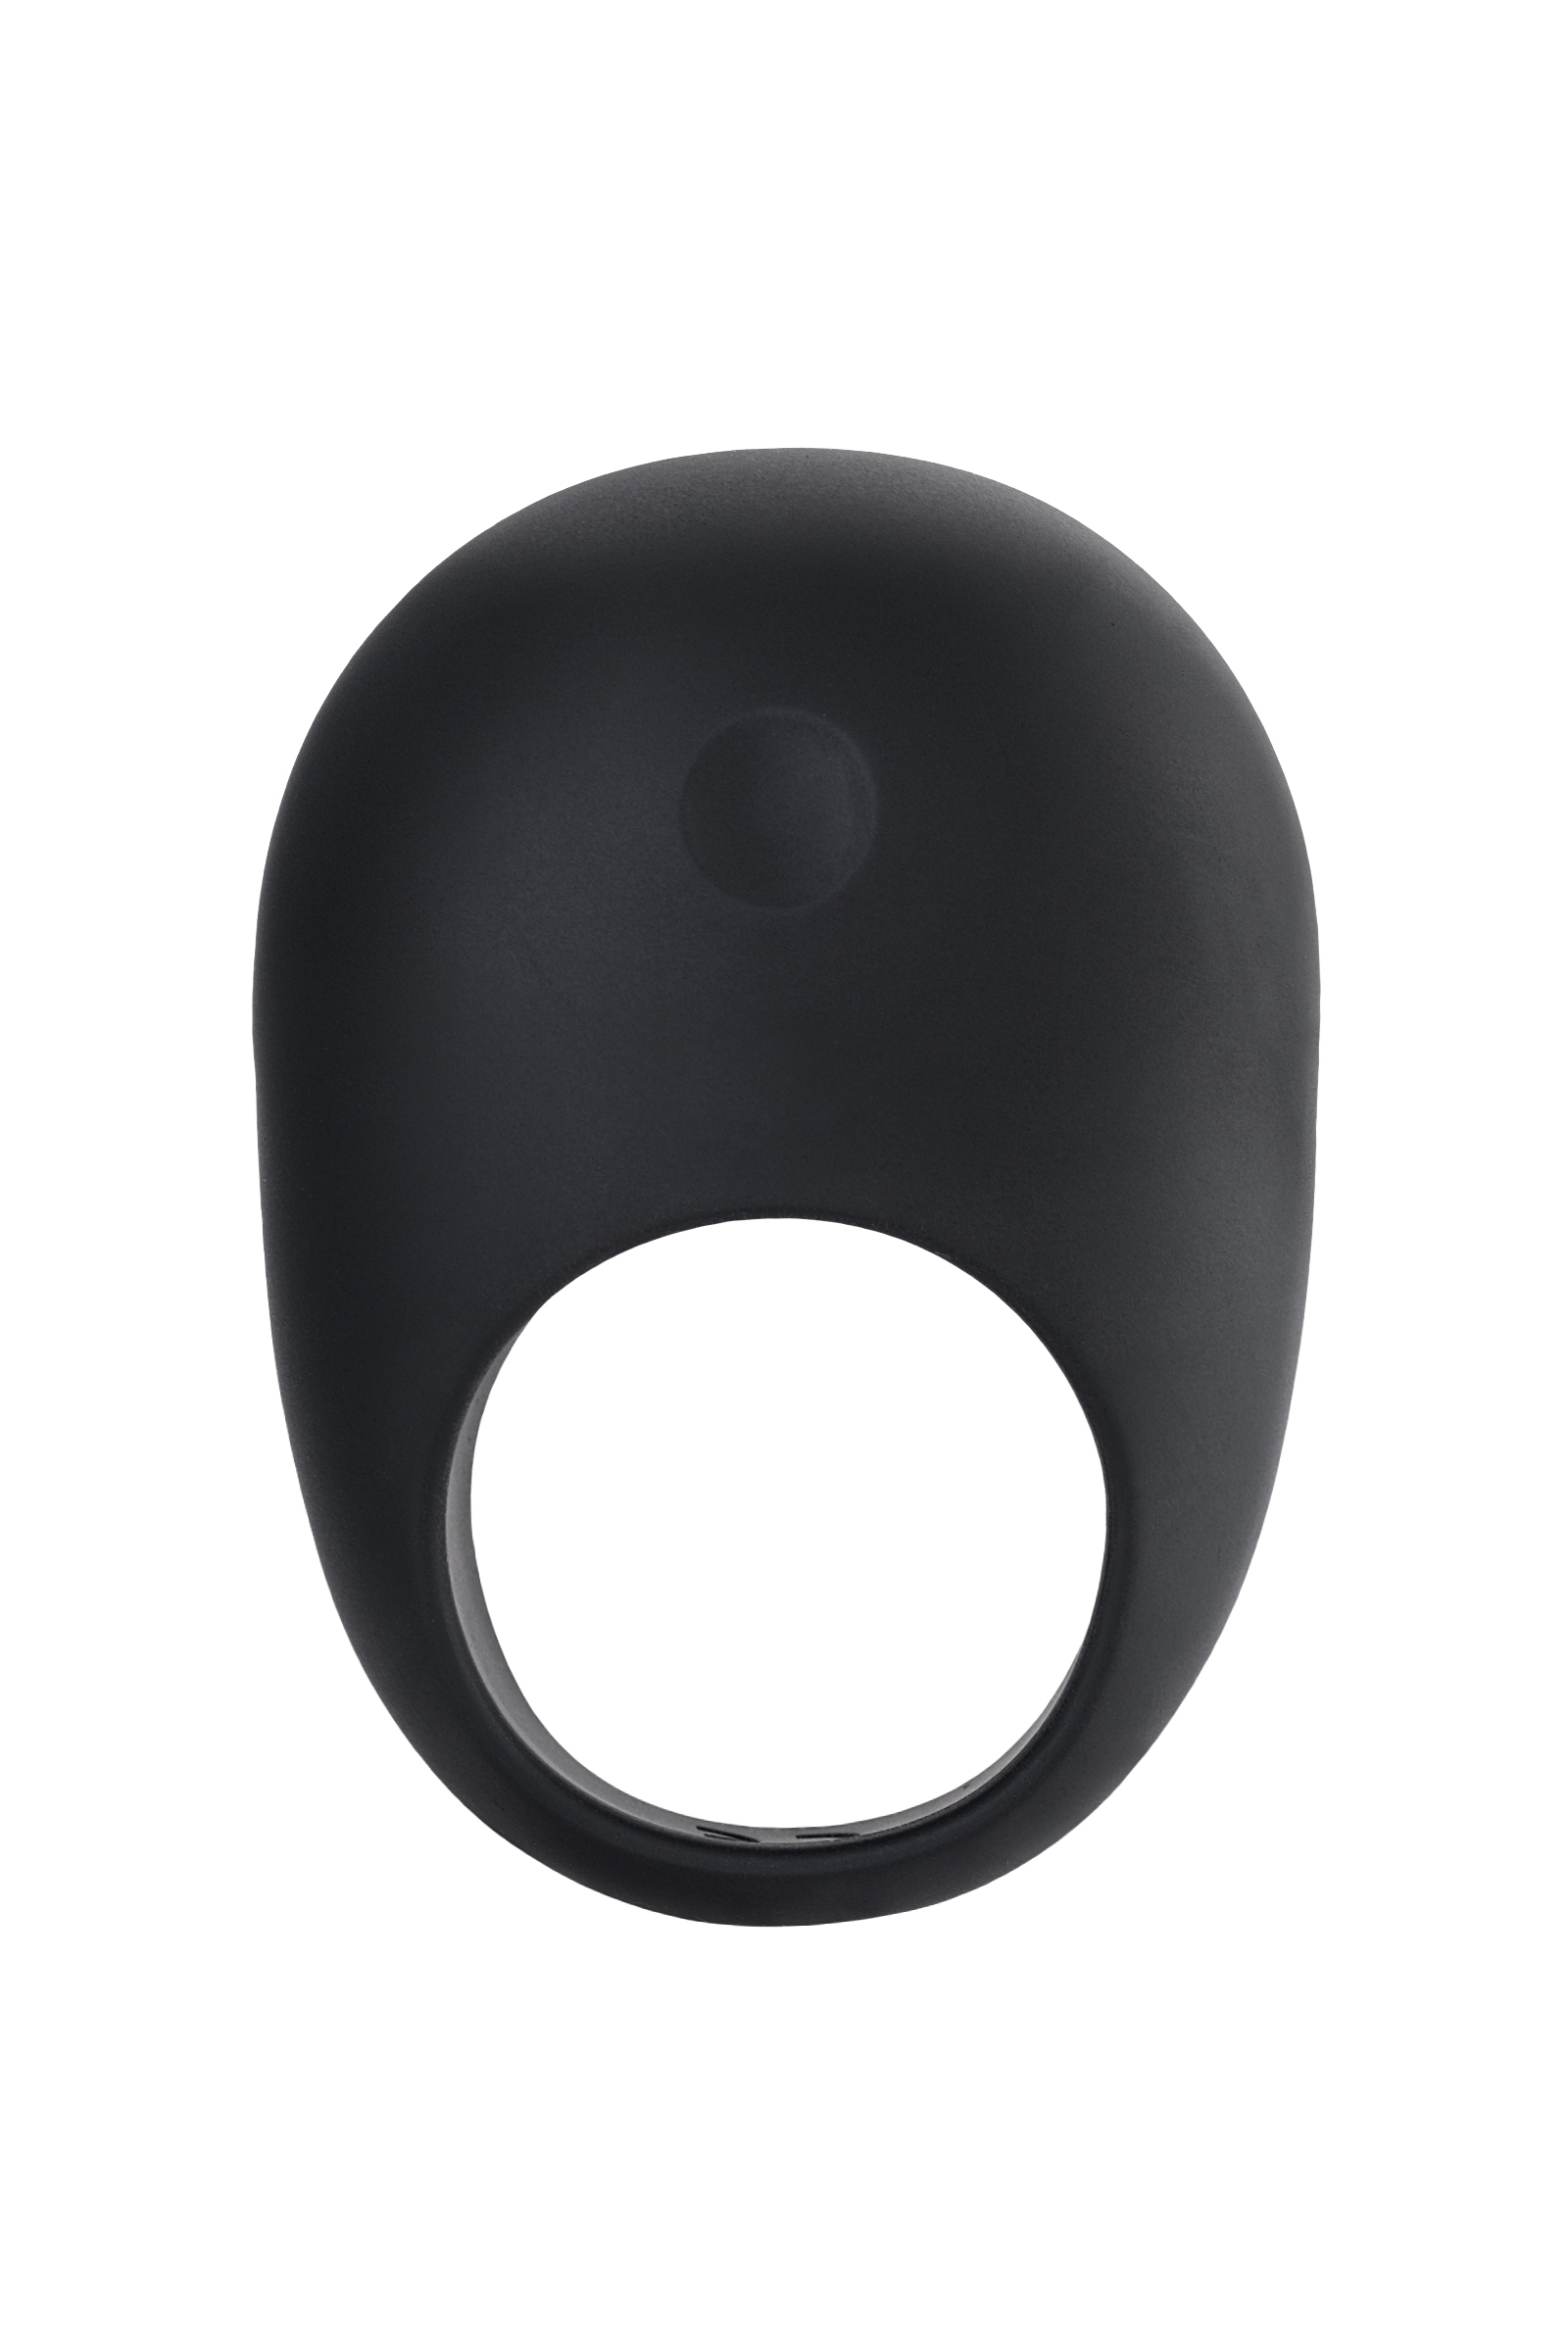 Силиконовое эрекционное кольцо на пенис Oivita ORing Plus черное 6.5 см